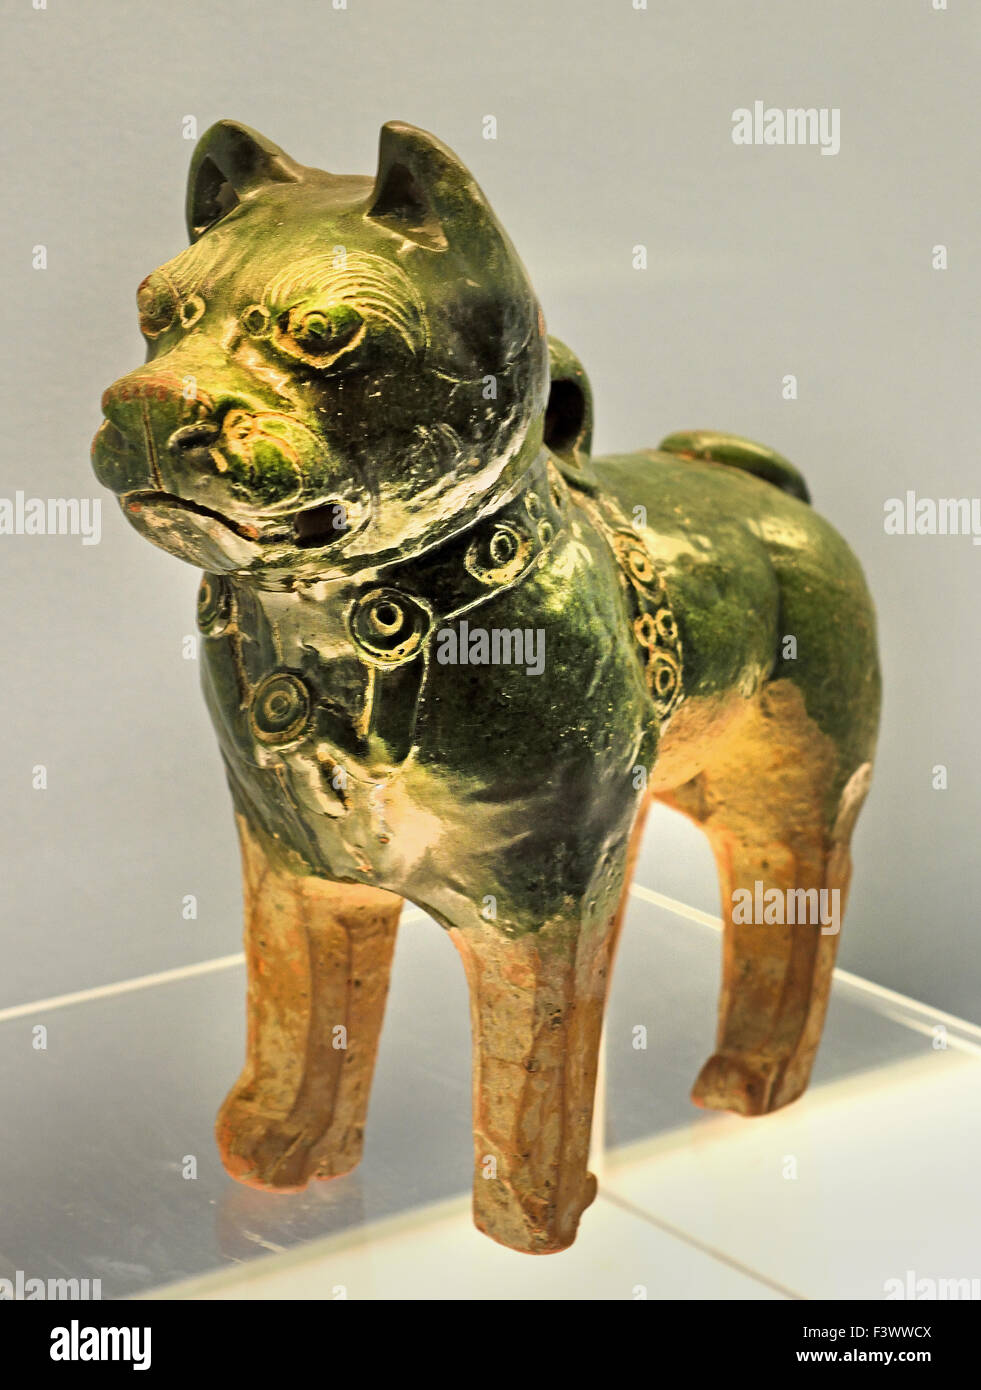 La poterie vernissée verte Chien 25 - 220 de la dynastie des Han de l'Est ( Musée de Shanghai de l'art chinois ancien ) Chine Banque D'Images